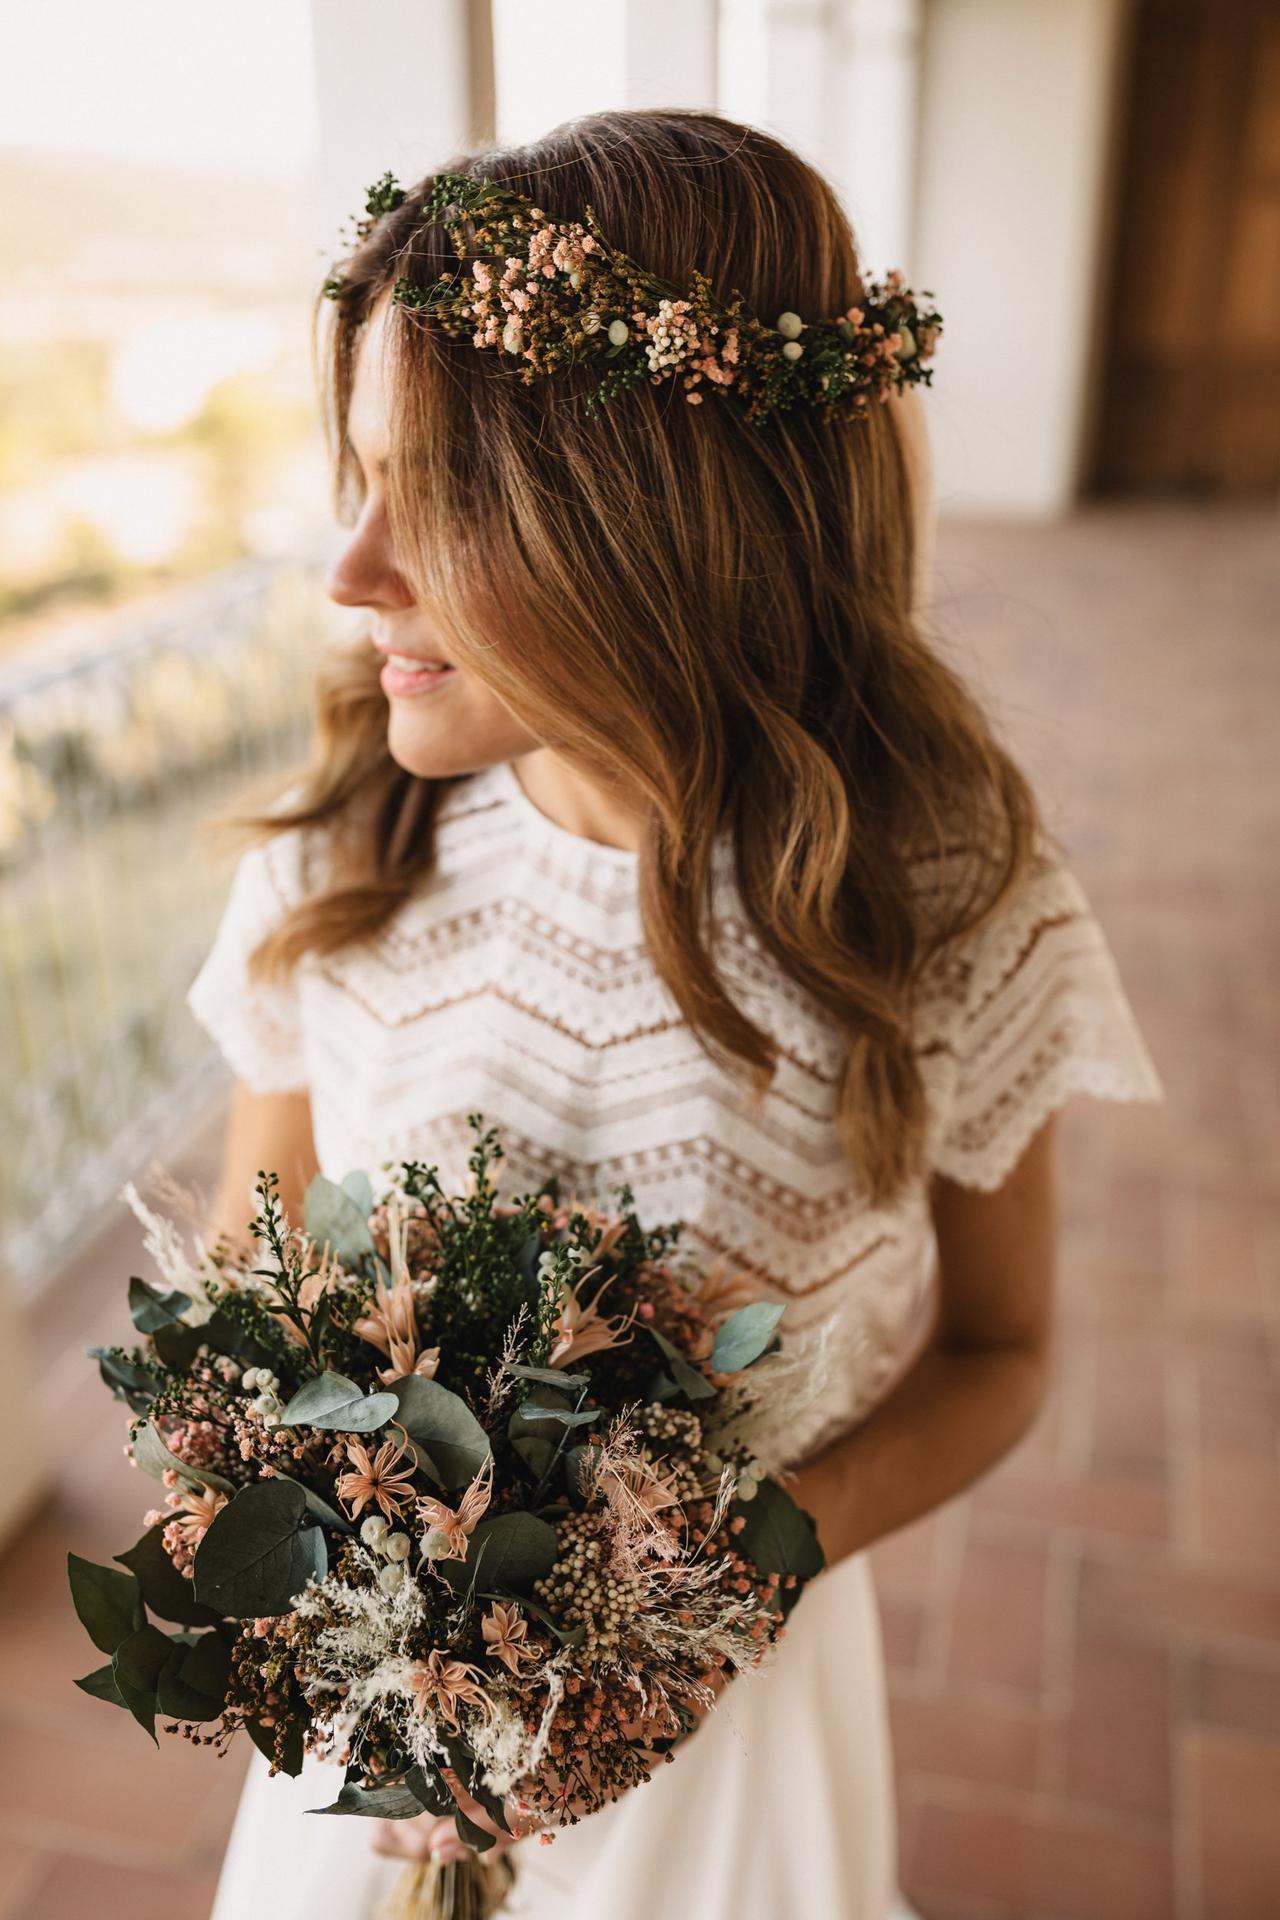 Coronas flores para novias: ideas para todos los gustos y